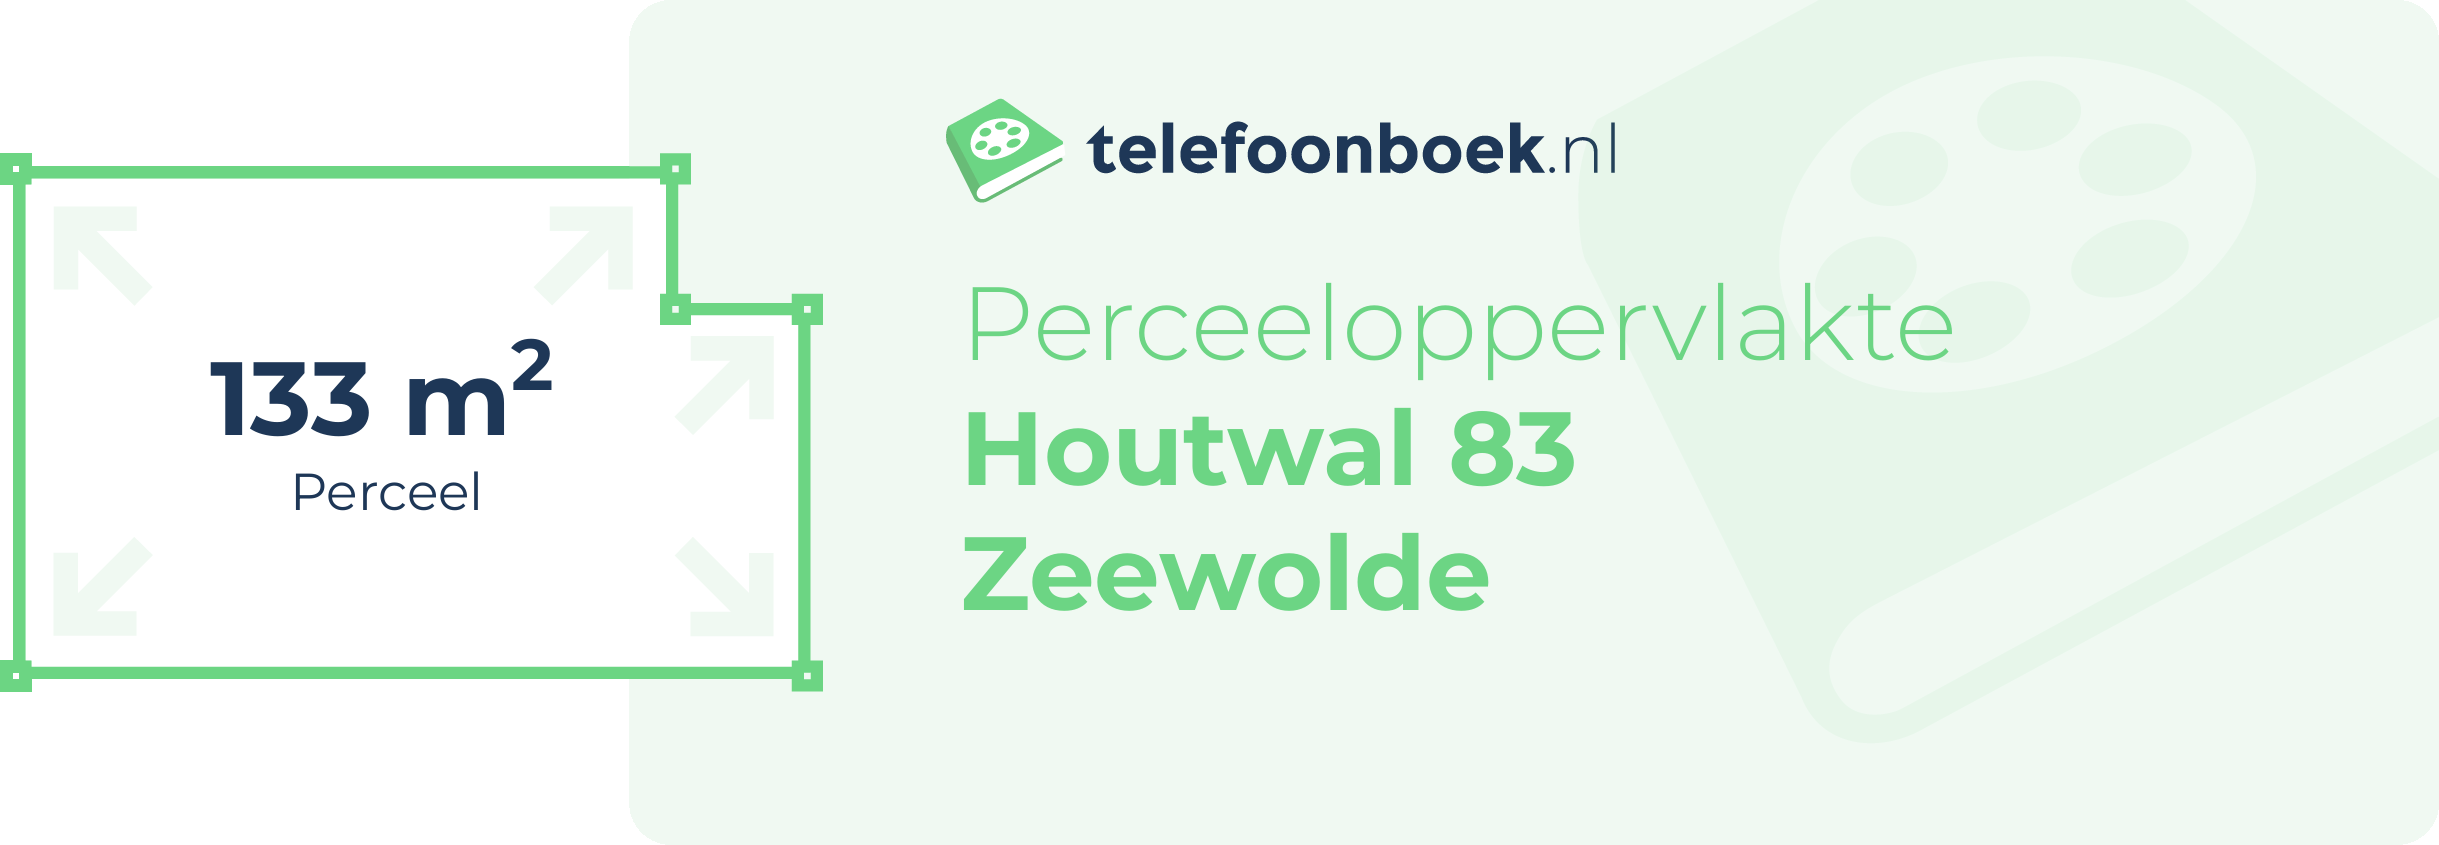 Perceeloppervlakte Houtwal 83 Zeewolde